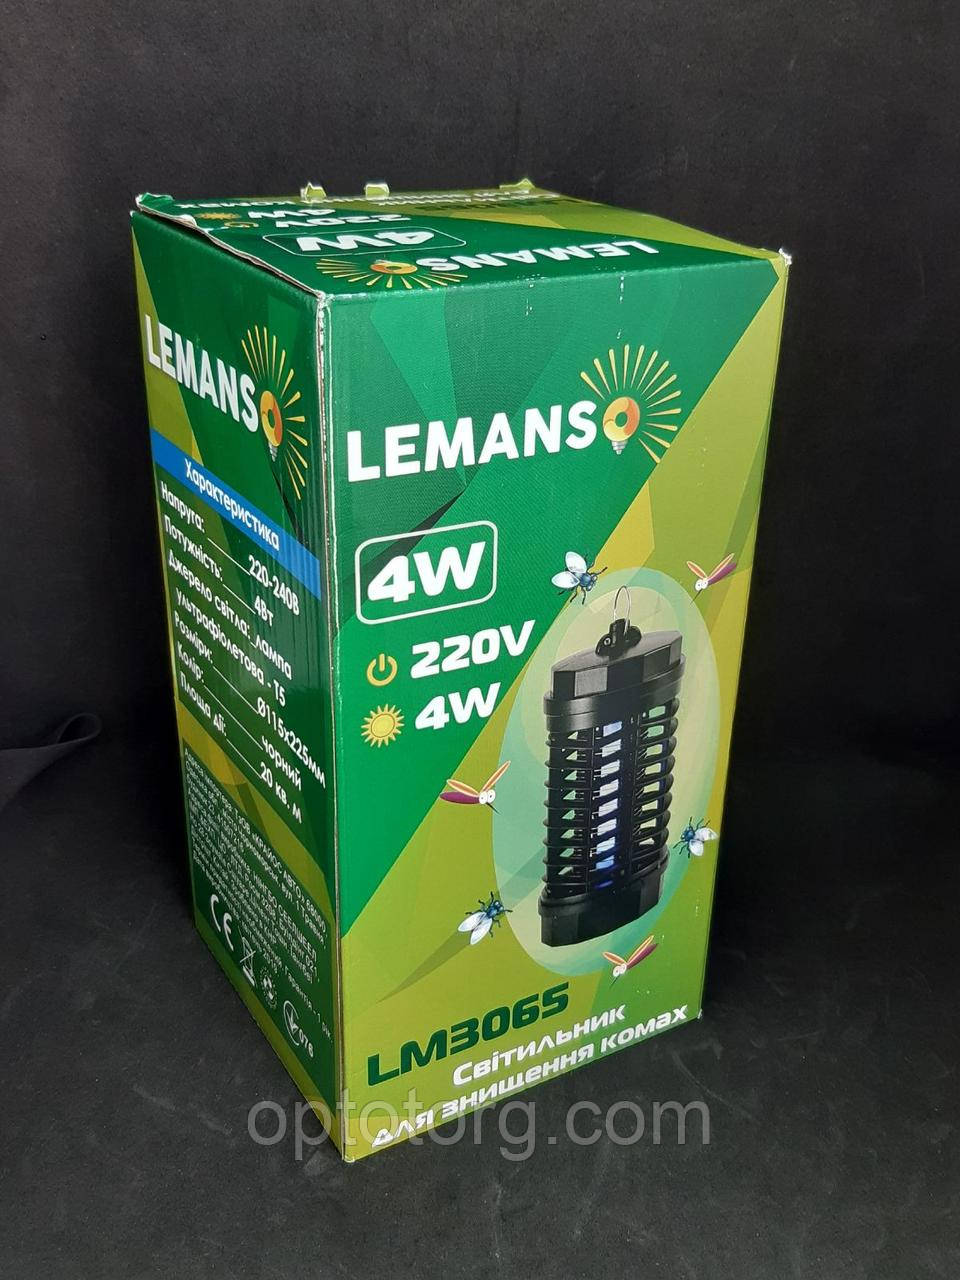 Світильник Lemans 4W для знищення комах LM3065